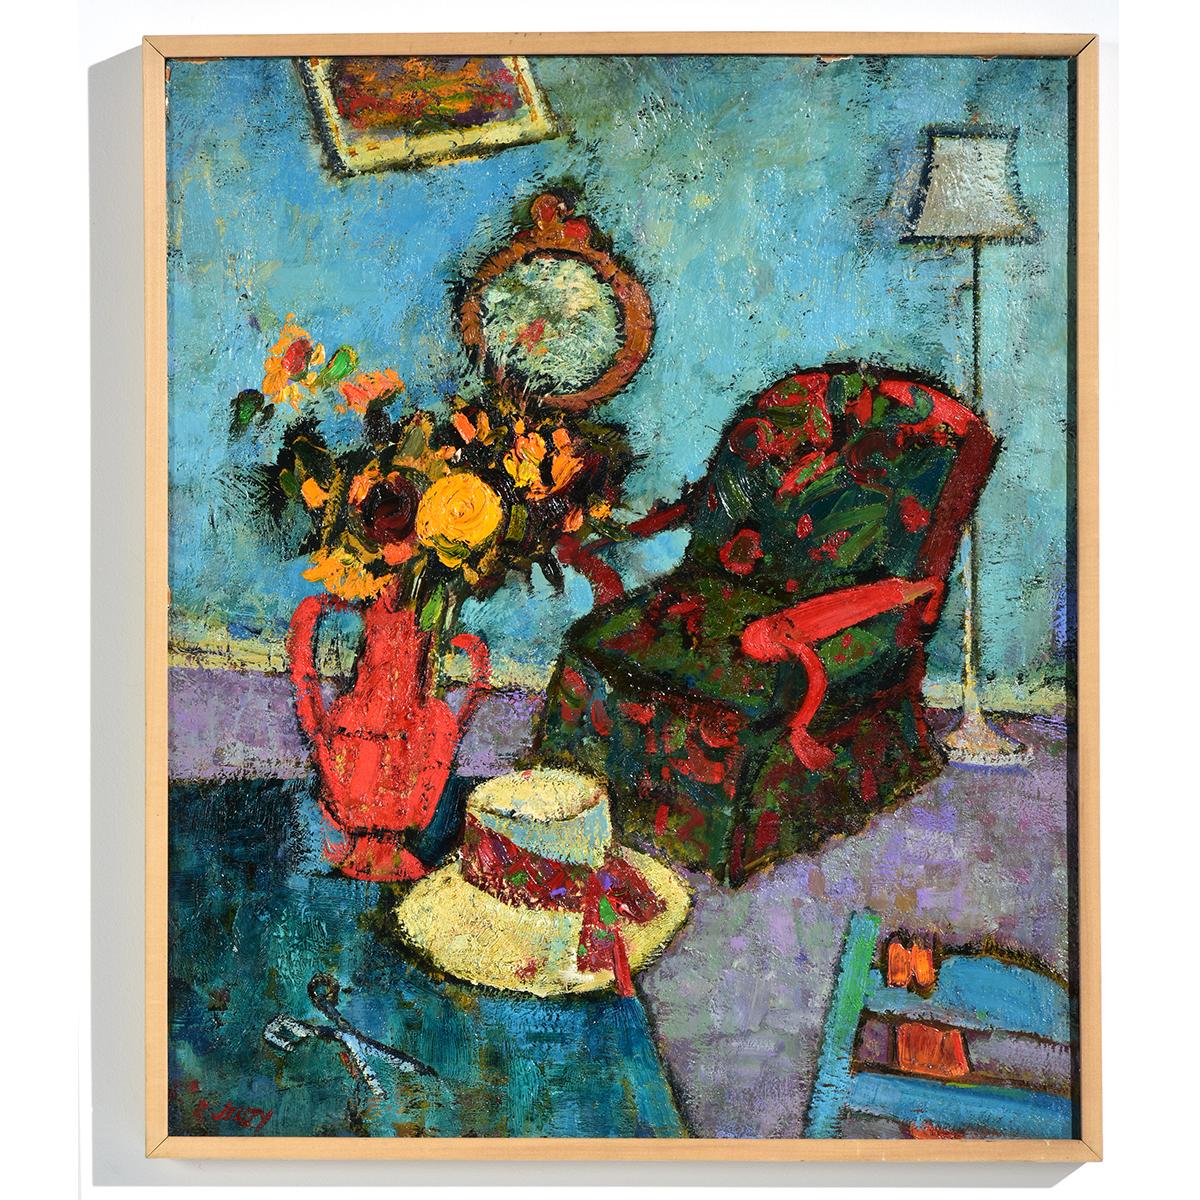 "Red Chair" ist zwar eine Innenraumszene, aber sie ist wie ein Stillleben arrangiert, bei dem die Möbel und Gegenstände leicht aus dem Gleichgewicht geraten sind, ganz im Sinne der kreativen Interieurs von Marc Chagall, dem russisch-französischen